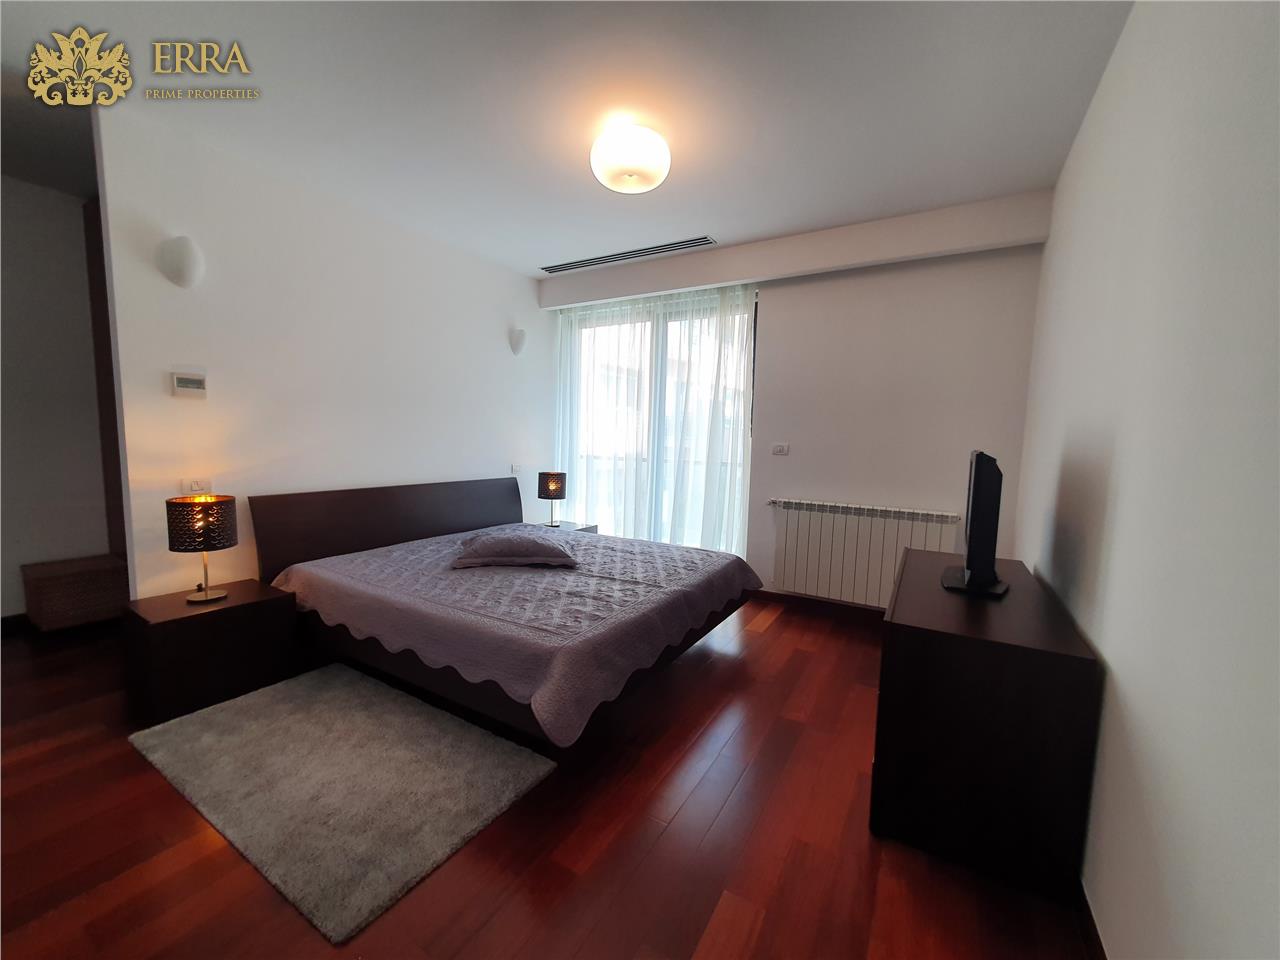 Primaverii. Moders spacious 3 room apartment